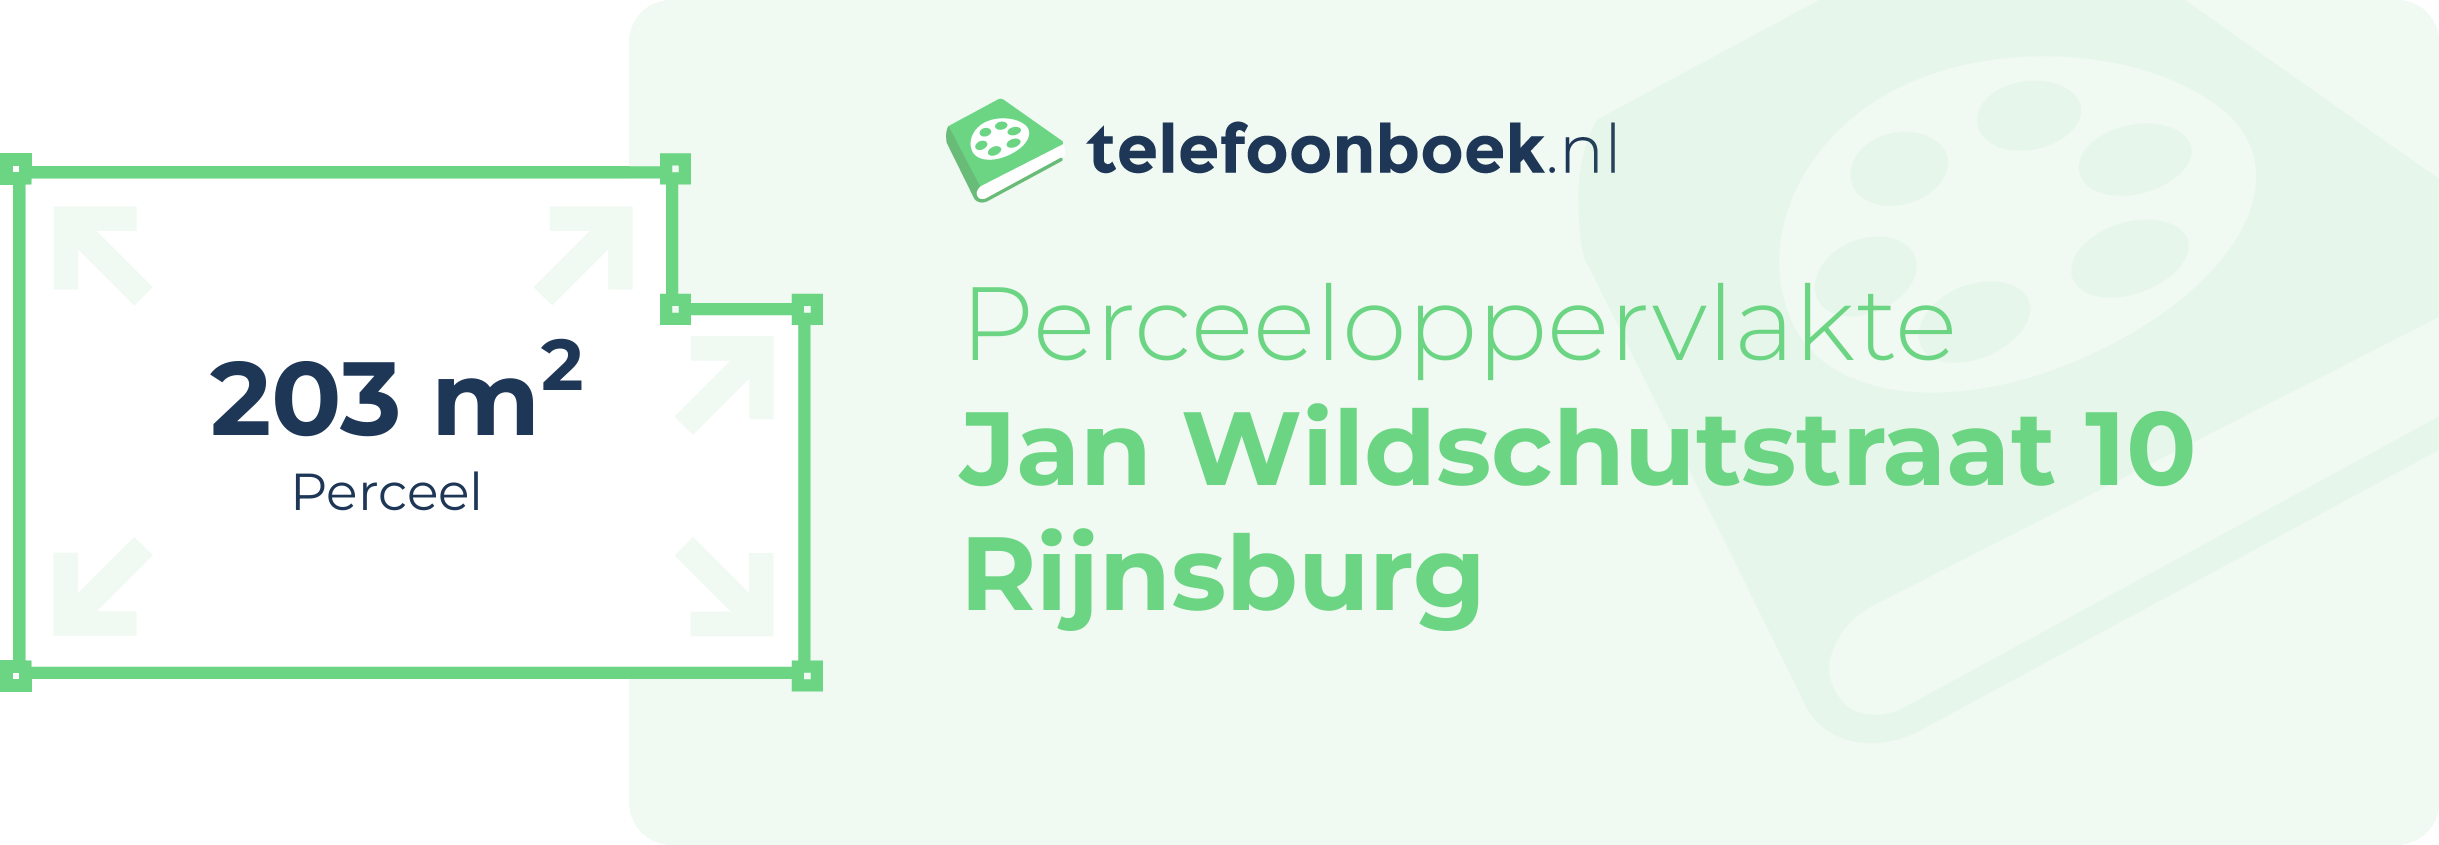 Perceeloppervlakte Jan Wildschutstraat 10 Rijnsburg